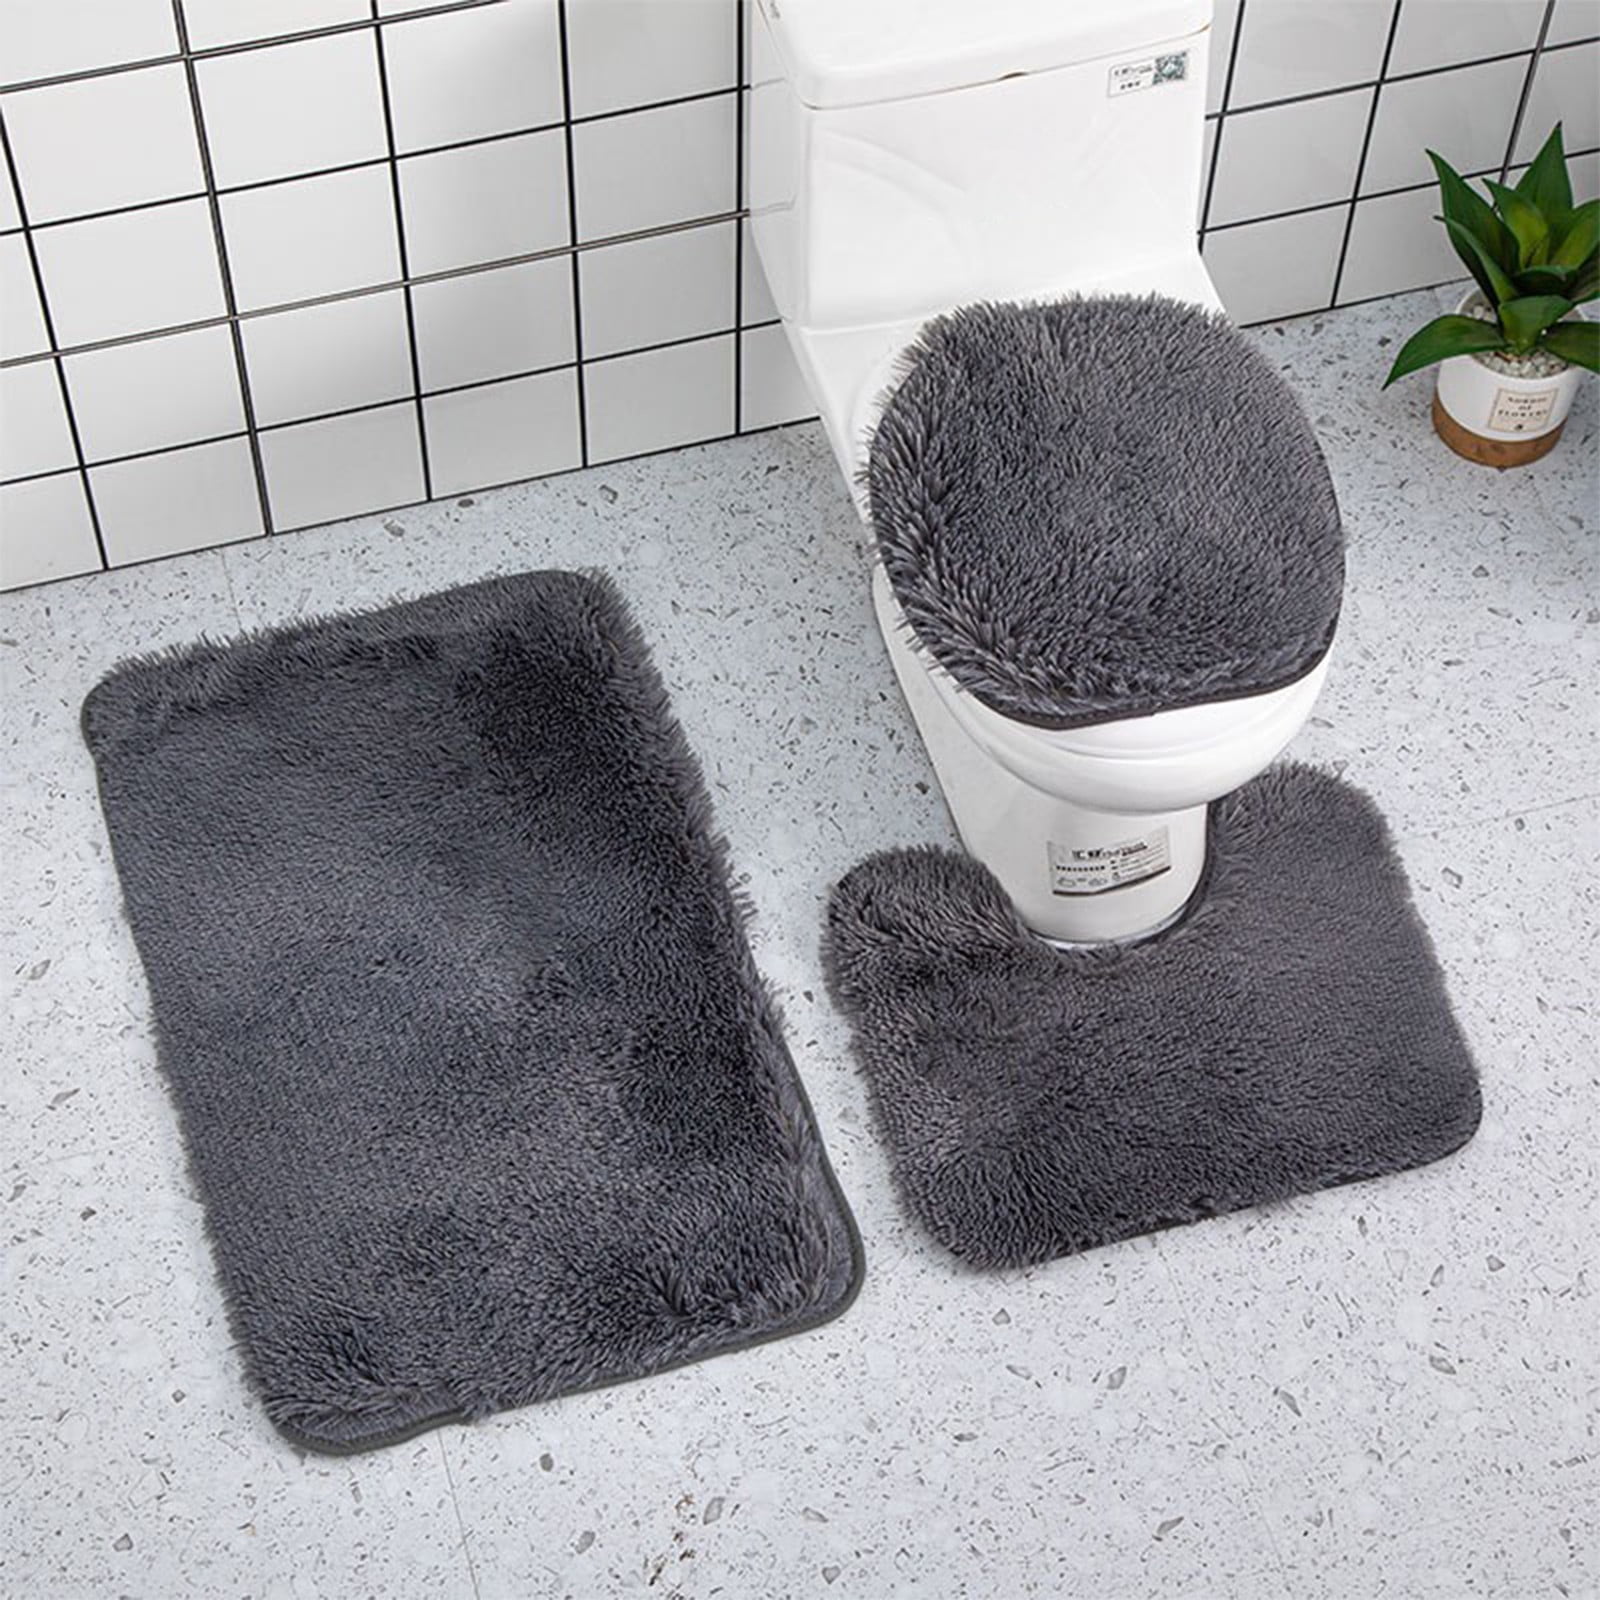 Toilet Floor Mats - Black